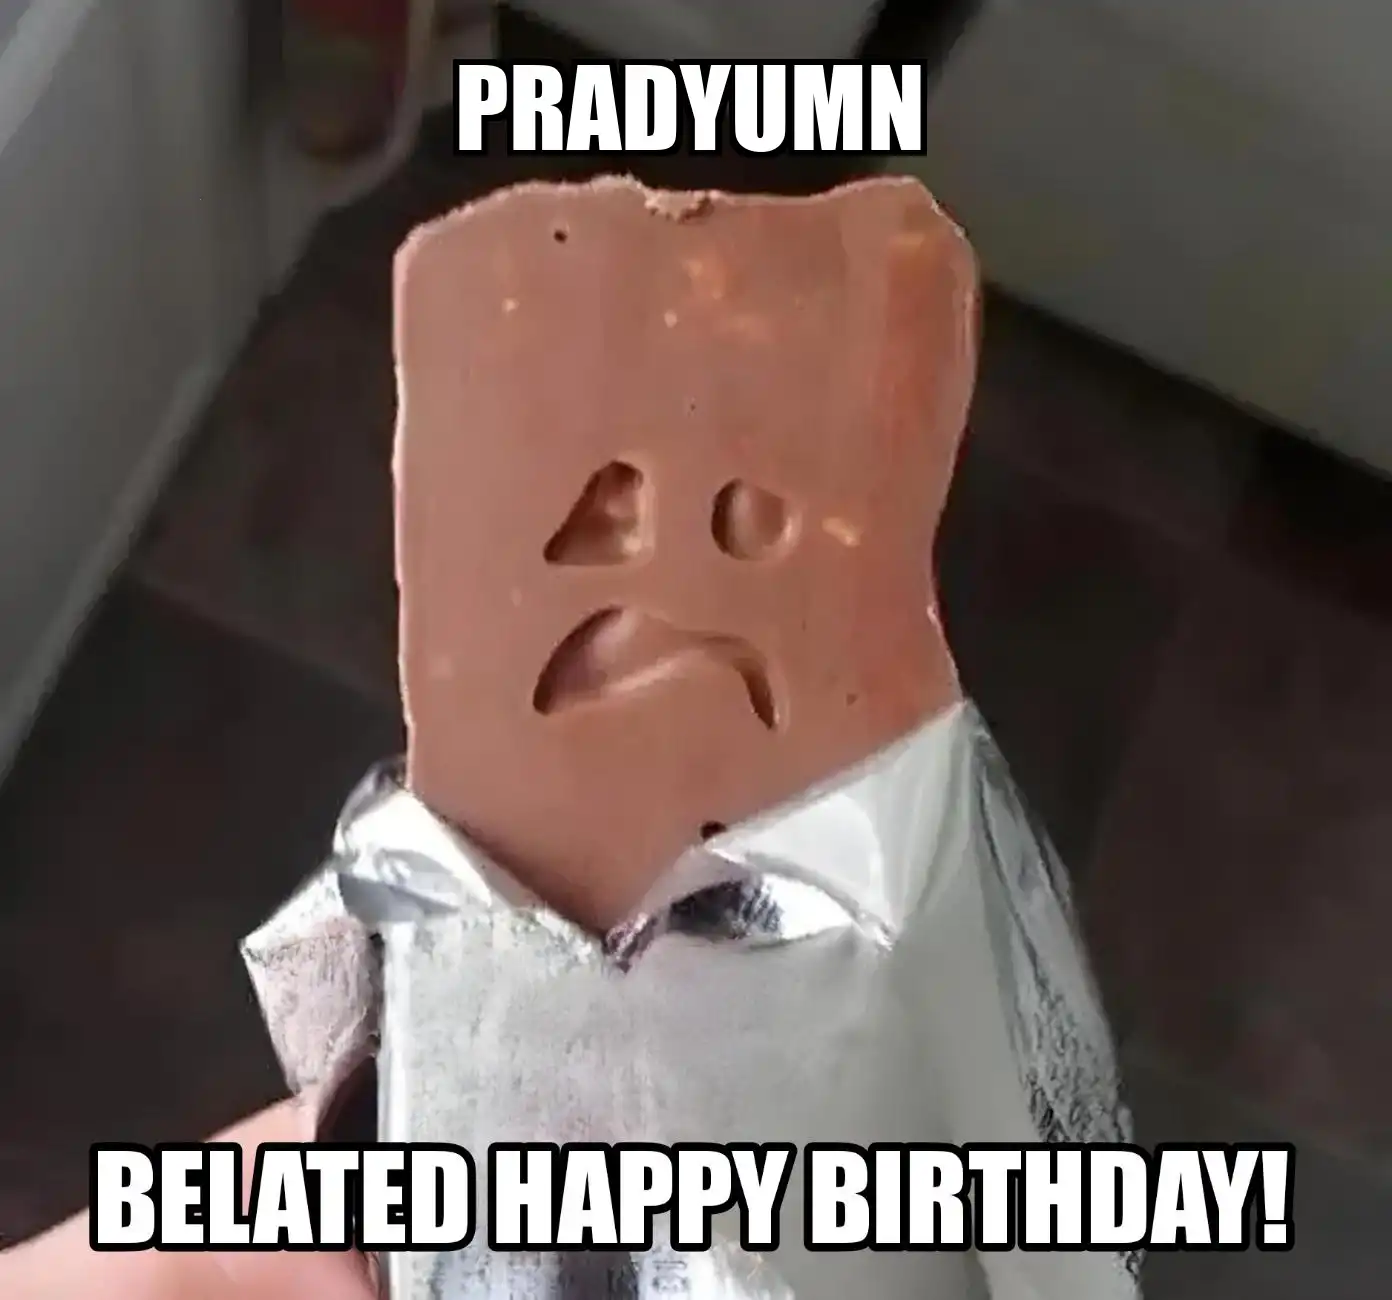 Happy Birthday Pradyumn Belated Happy Birthday Meme